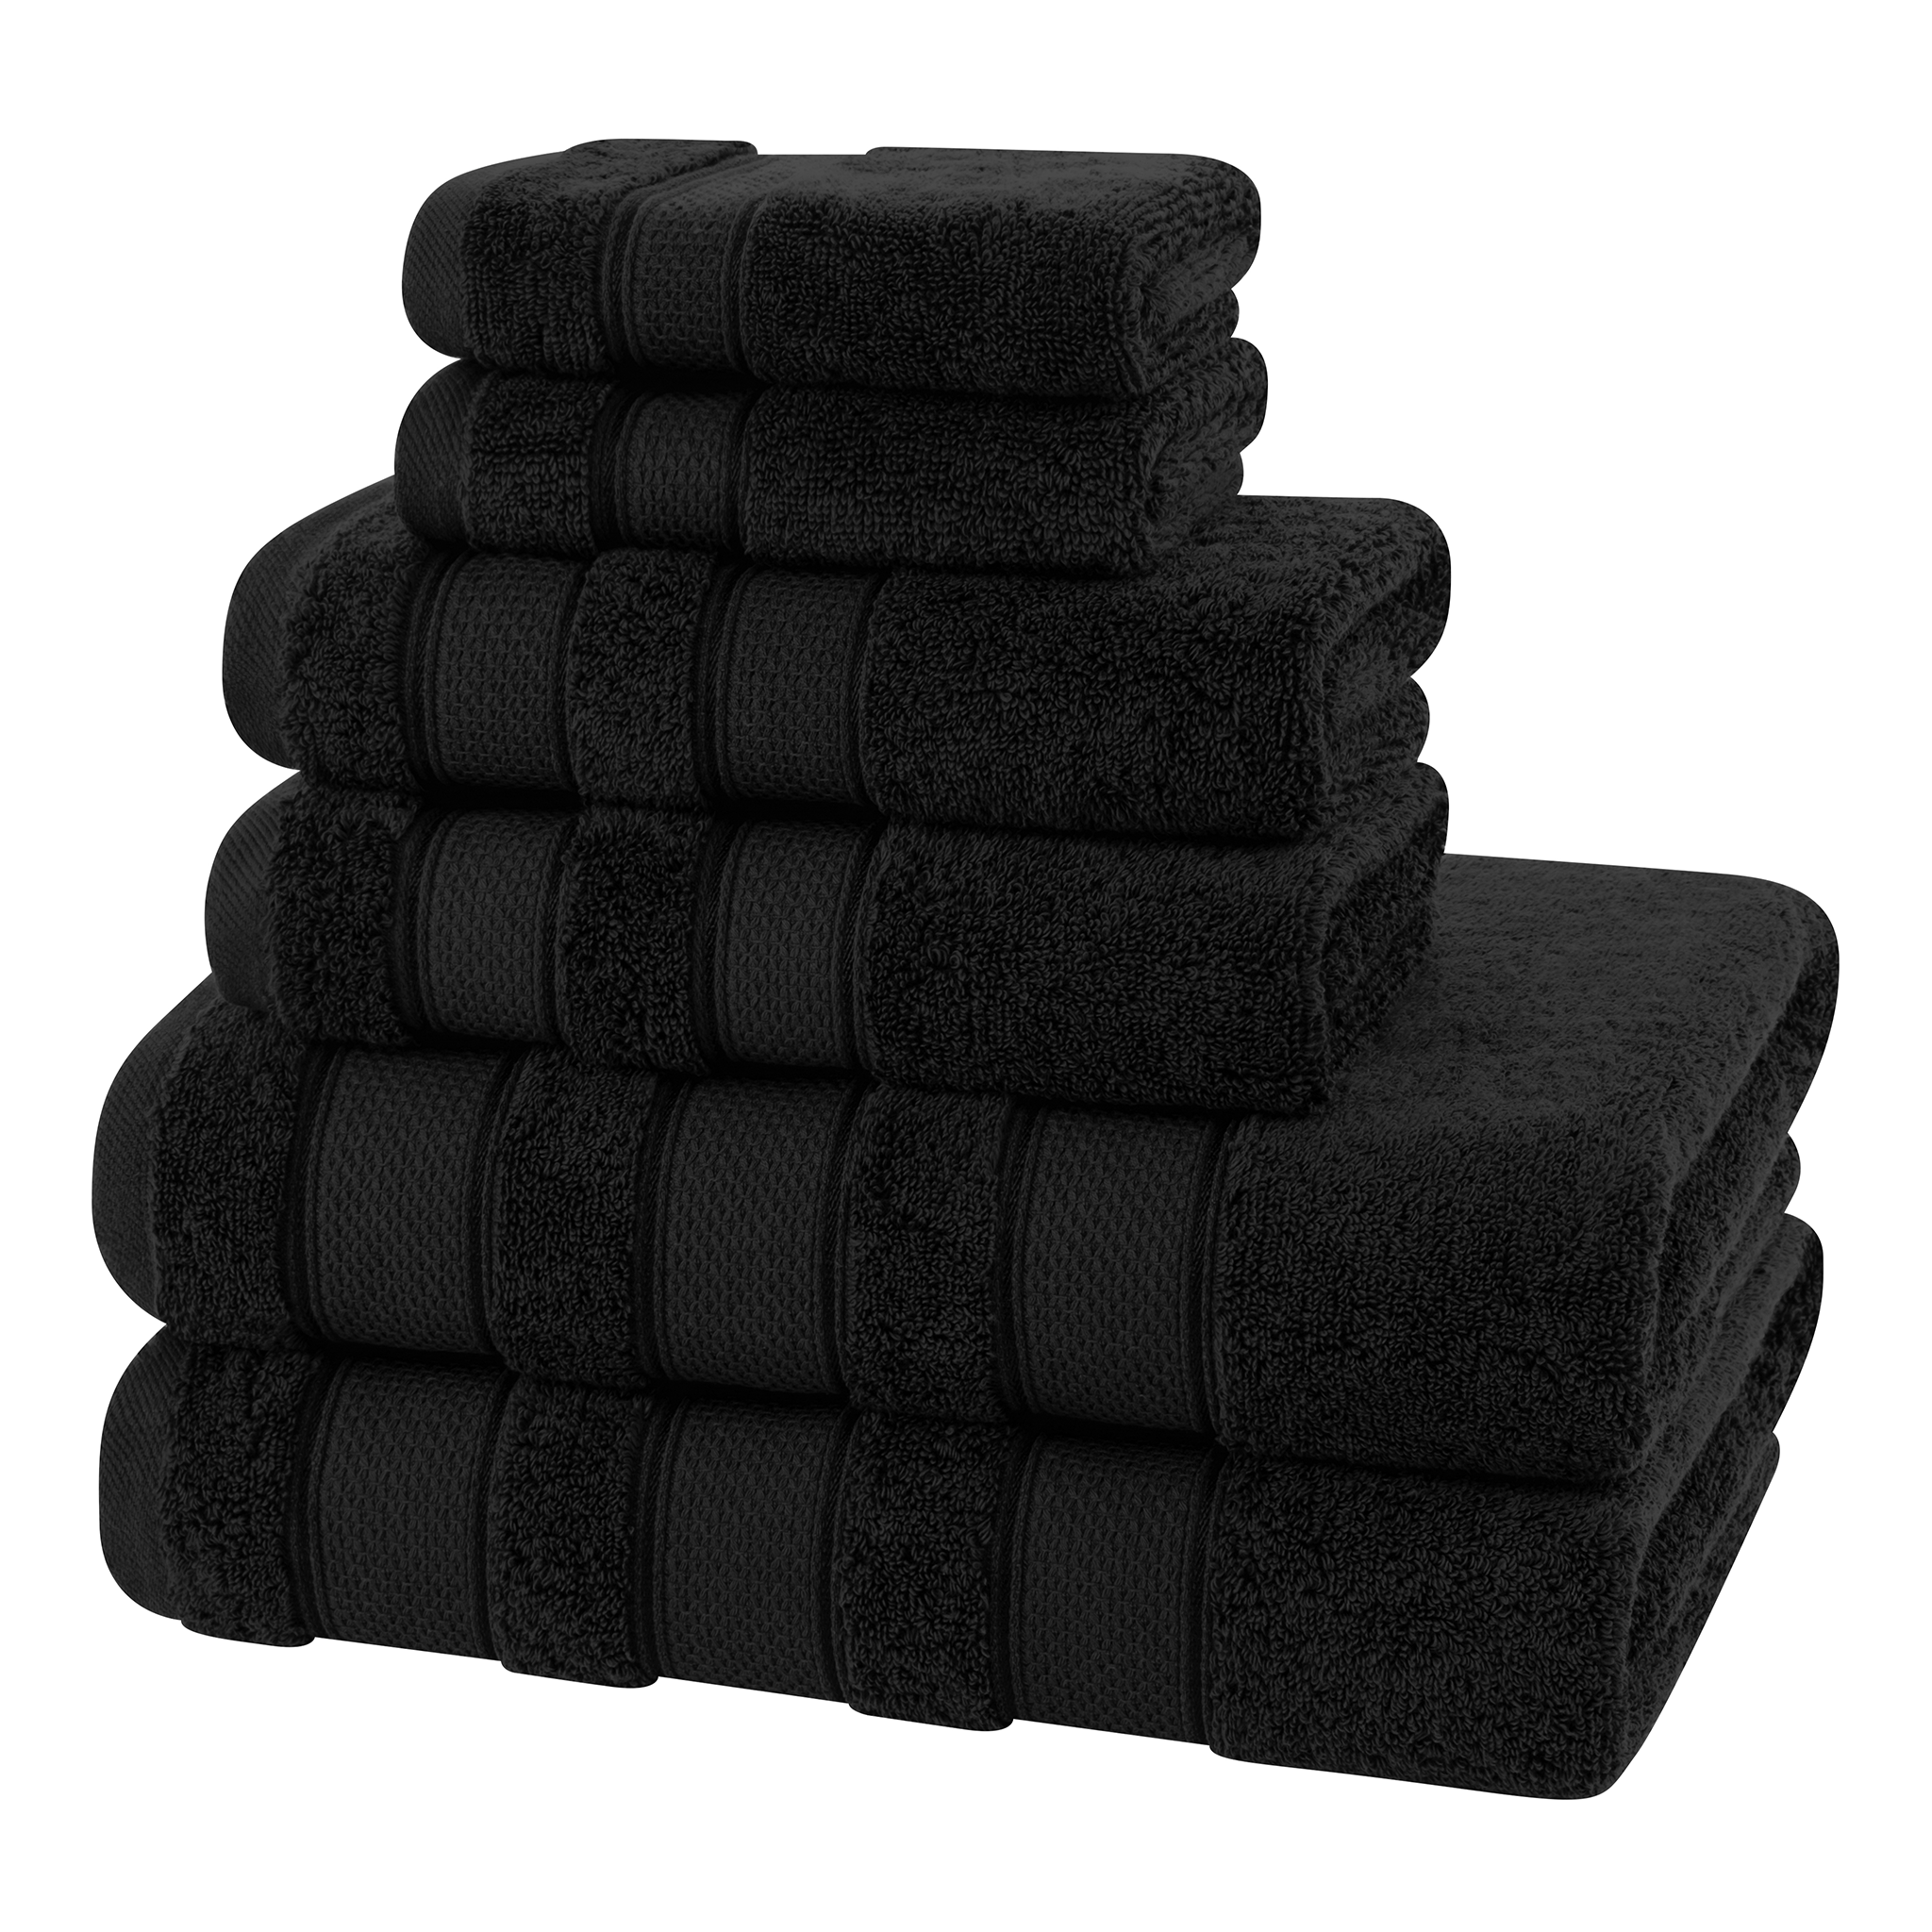 American Soft Linen - Salem 6 Piece Turkish Combed Cotton Luxury Bath Towel Set - 10 Set Case Pack - Black - 6